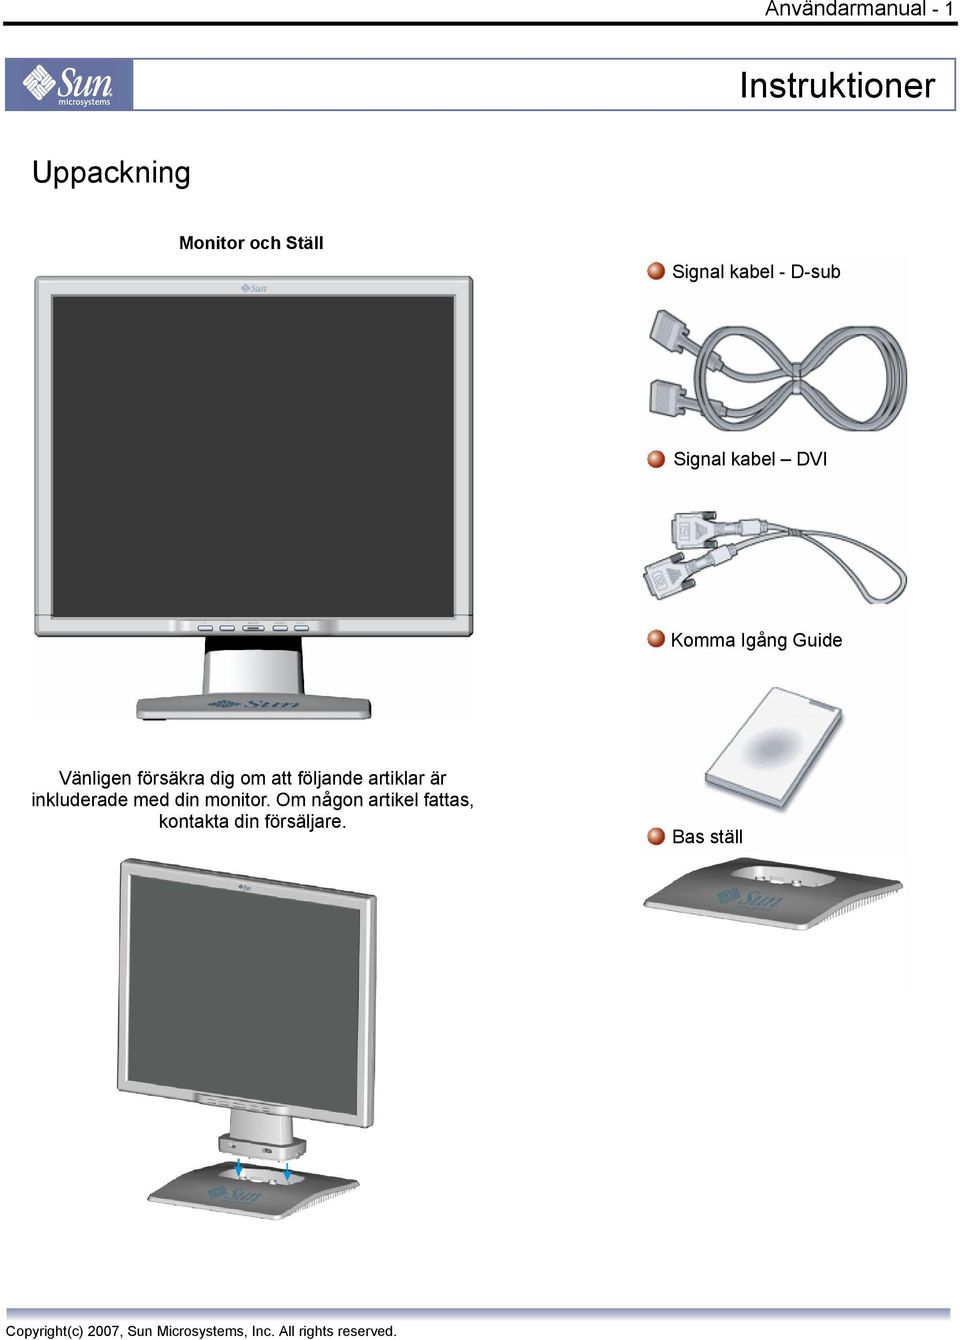 Signal kabel DVI Komma Igång Guide Vänligen försäkra dig om att